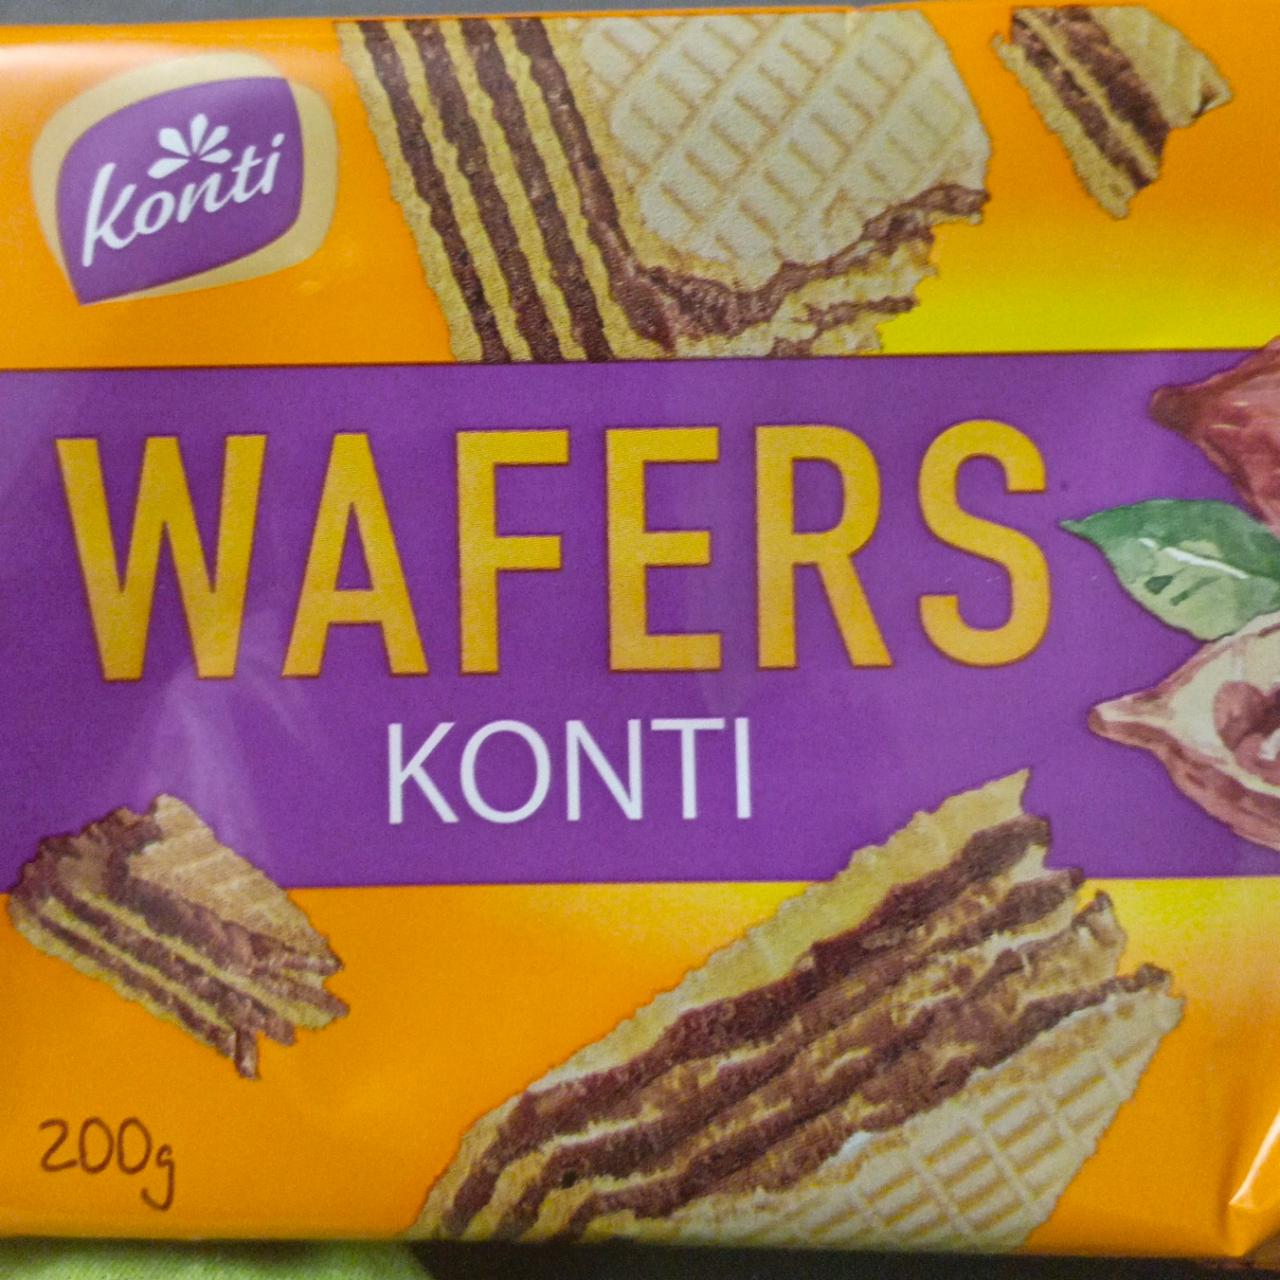 Фото - Вафли со вкусом шоколада wafers Konti